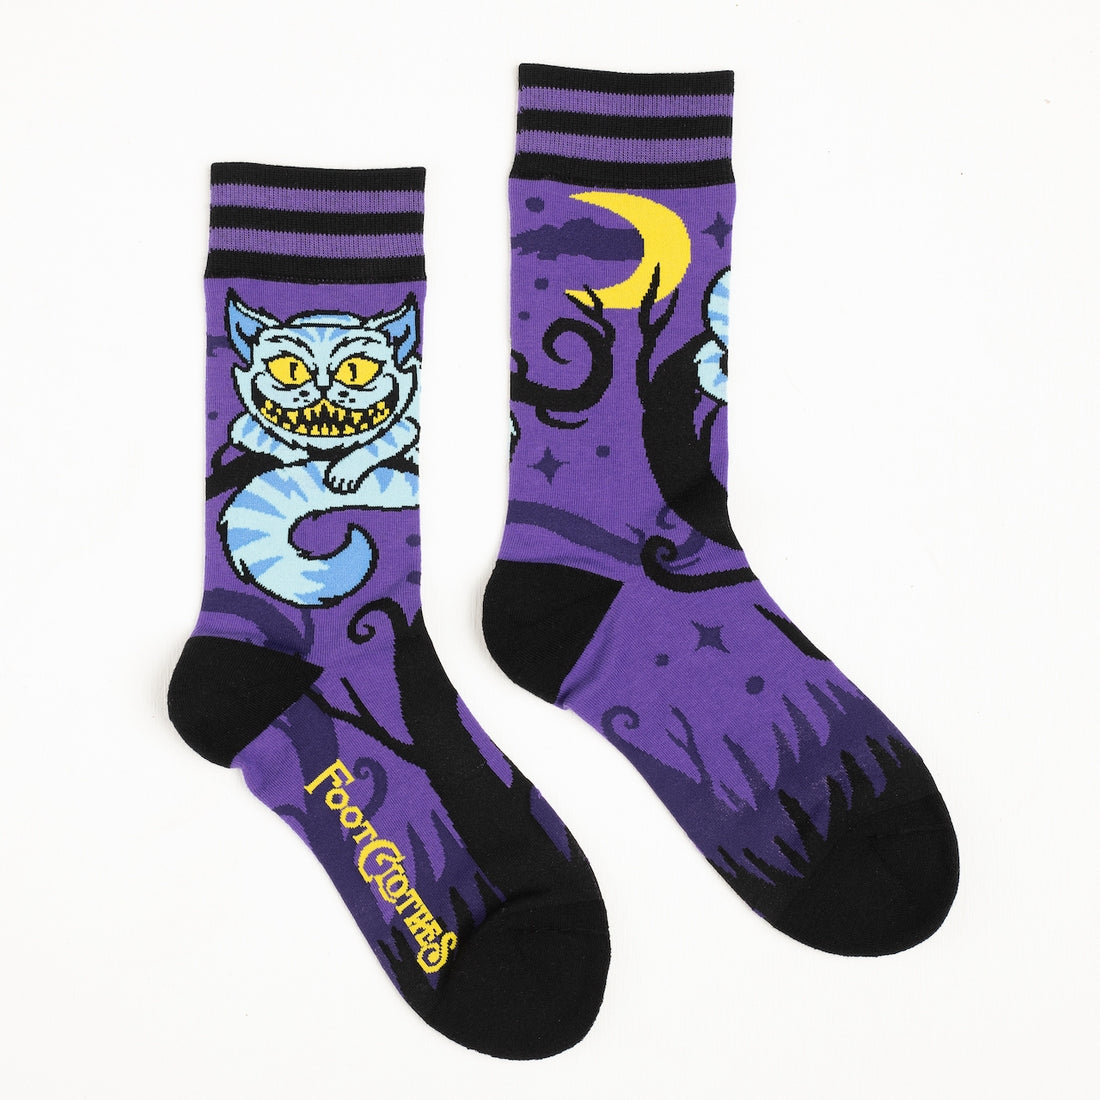 Awesome Mystical Printed Socks